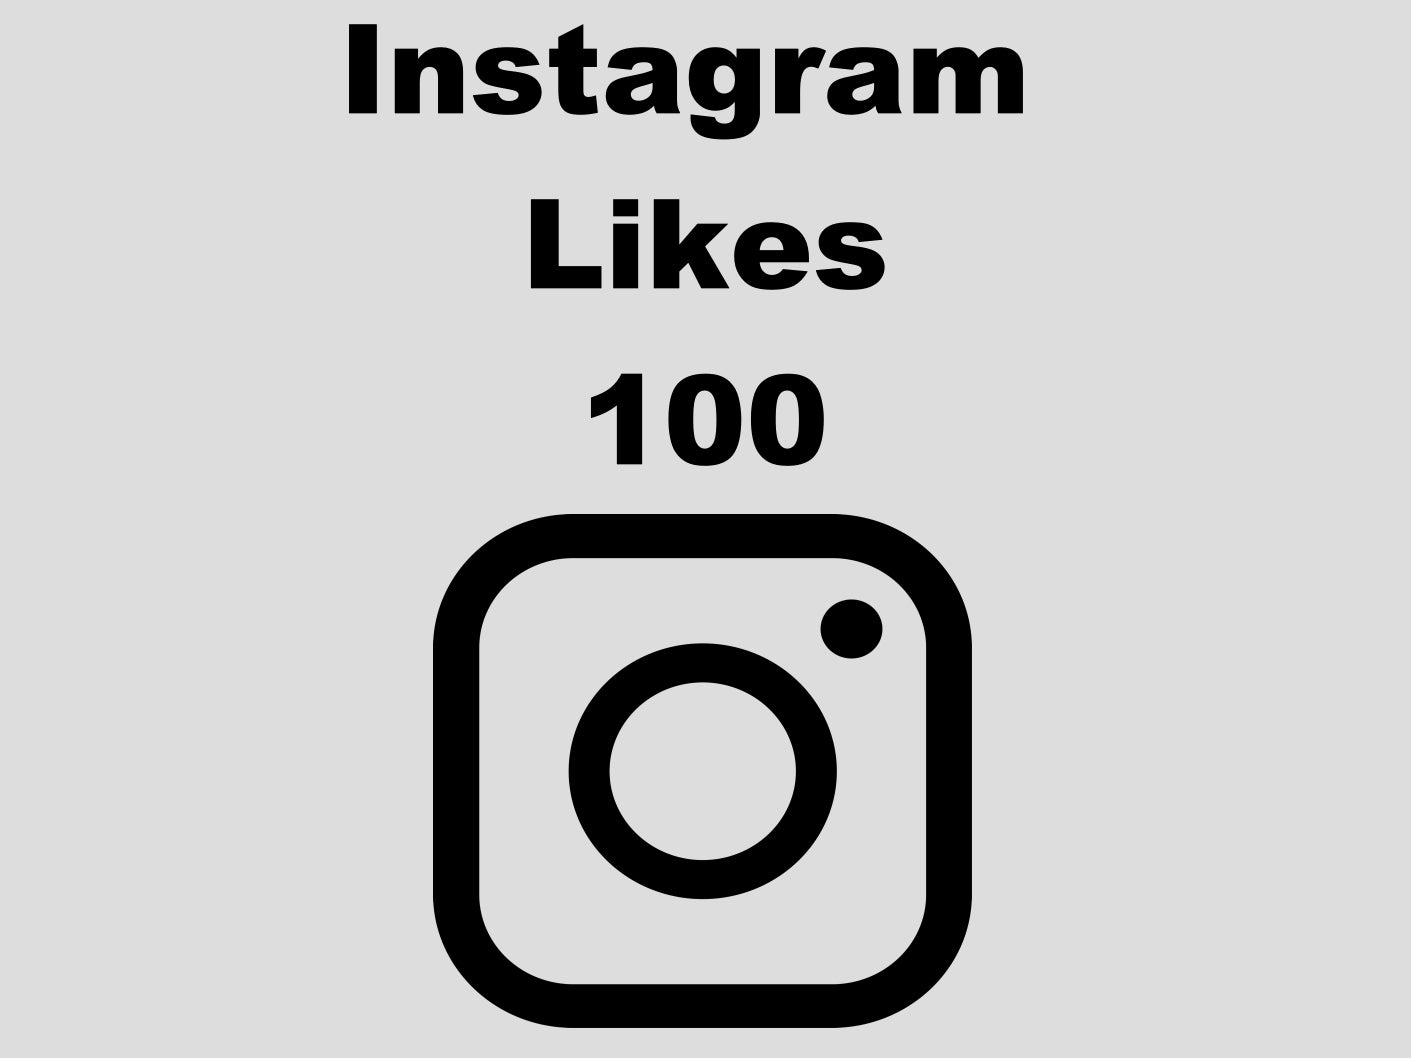 echte Instagram Likes günstig kaufen 100 Likes